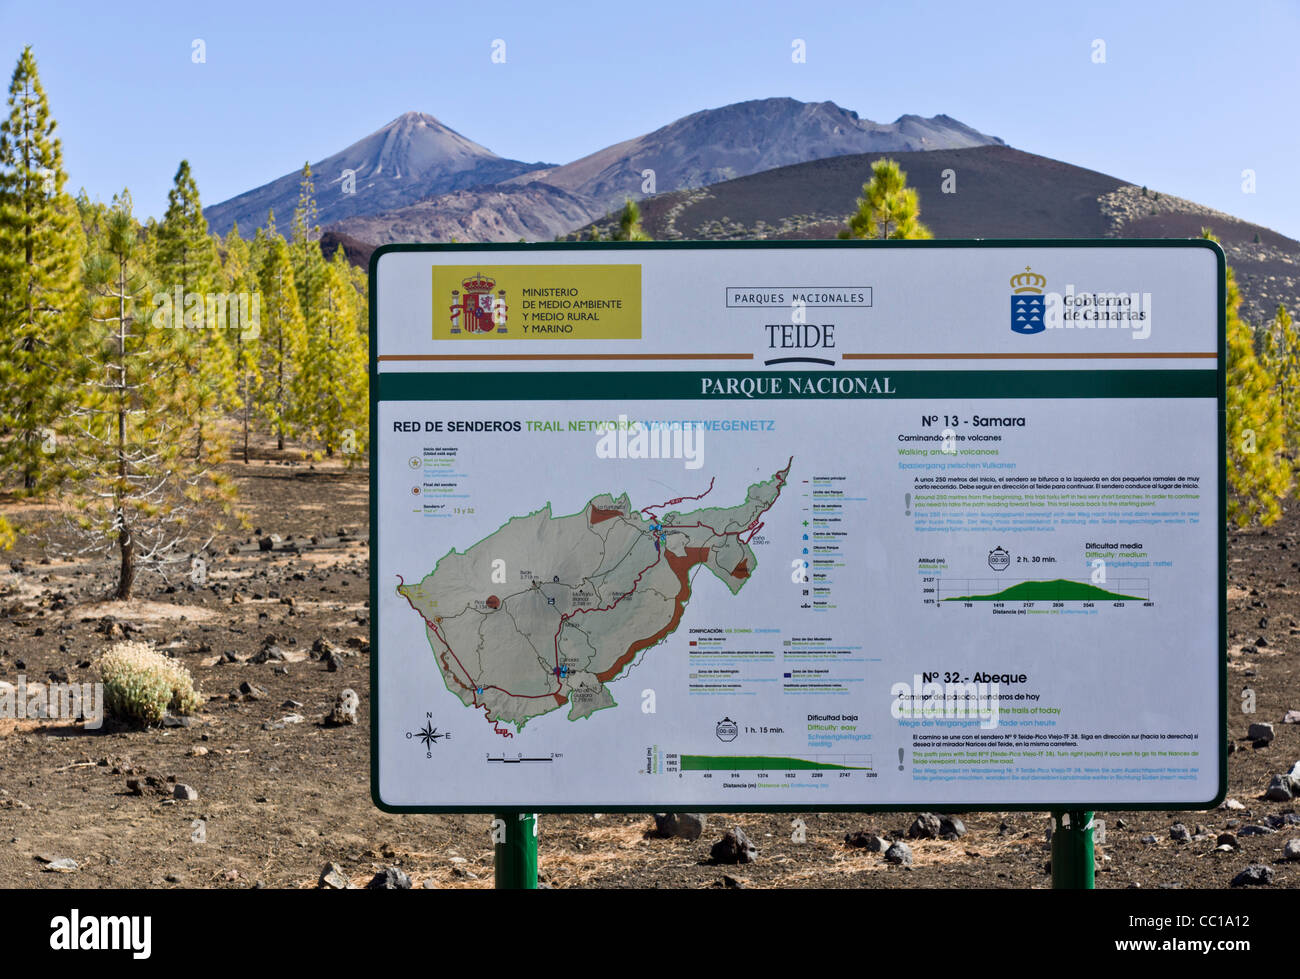 Le volcan de Samara, sentiers approche pour le Mont Teide, Tenerife. Carte de l'information et de conseil. Banque D'Images